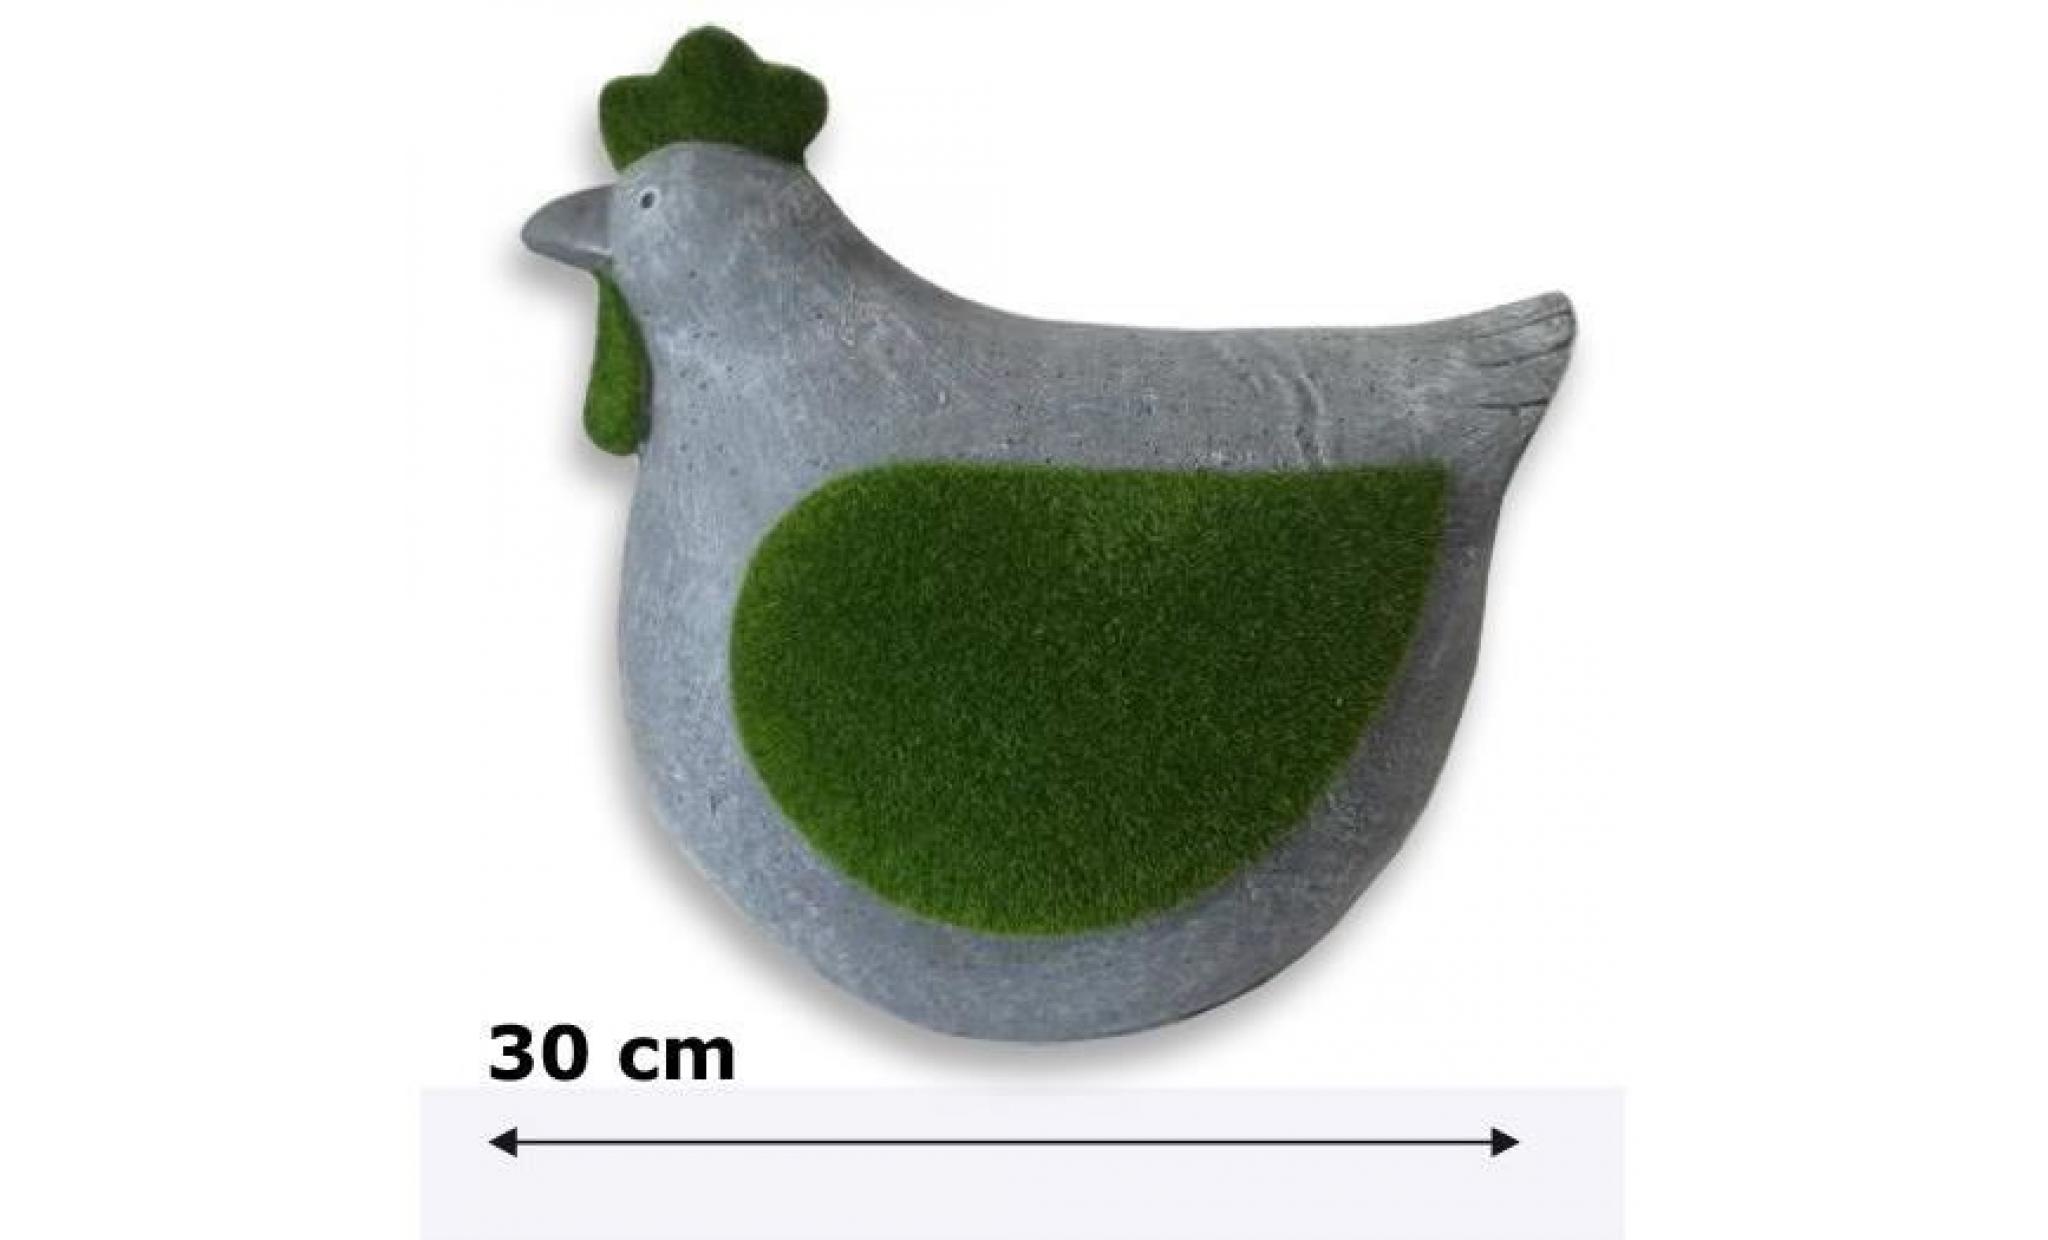 mundus décoration poulette en plastique 30x16x30 cm   gris et vert pas cher